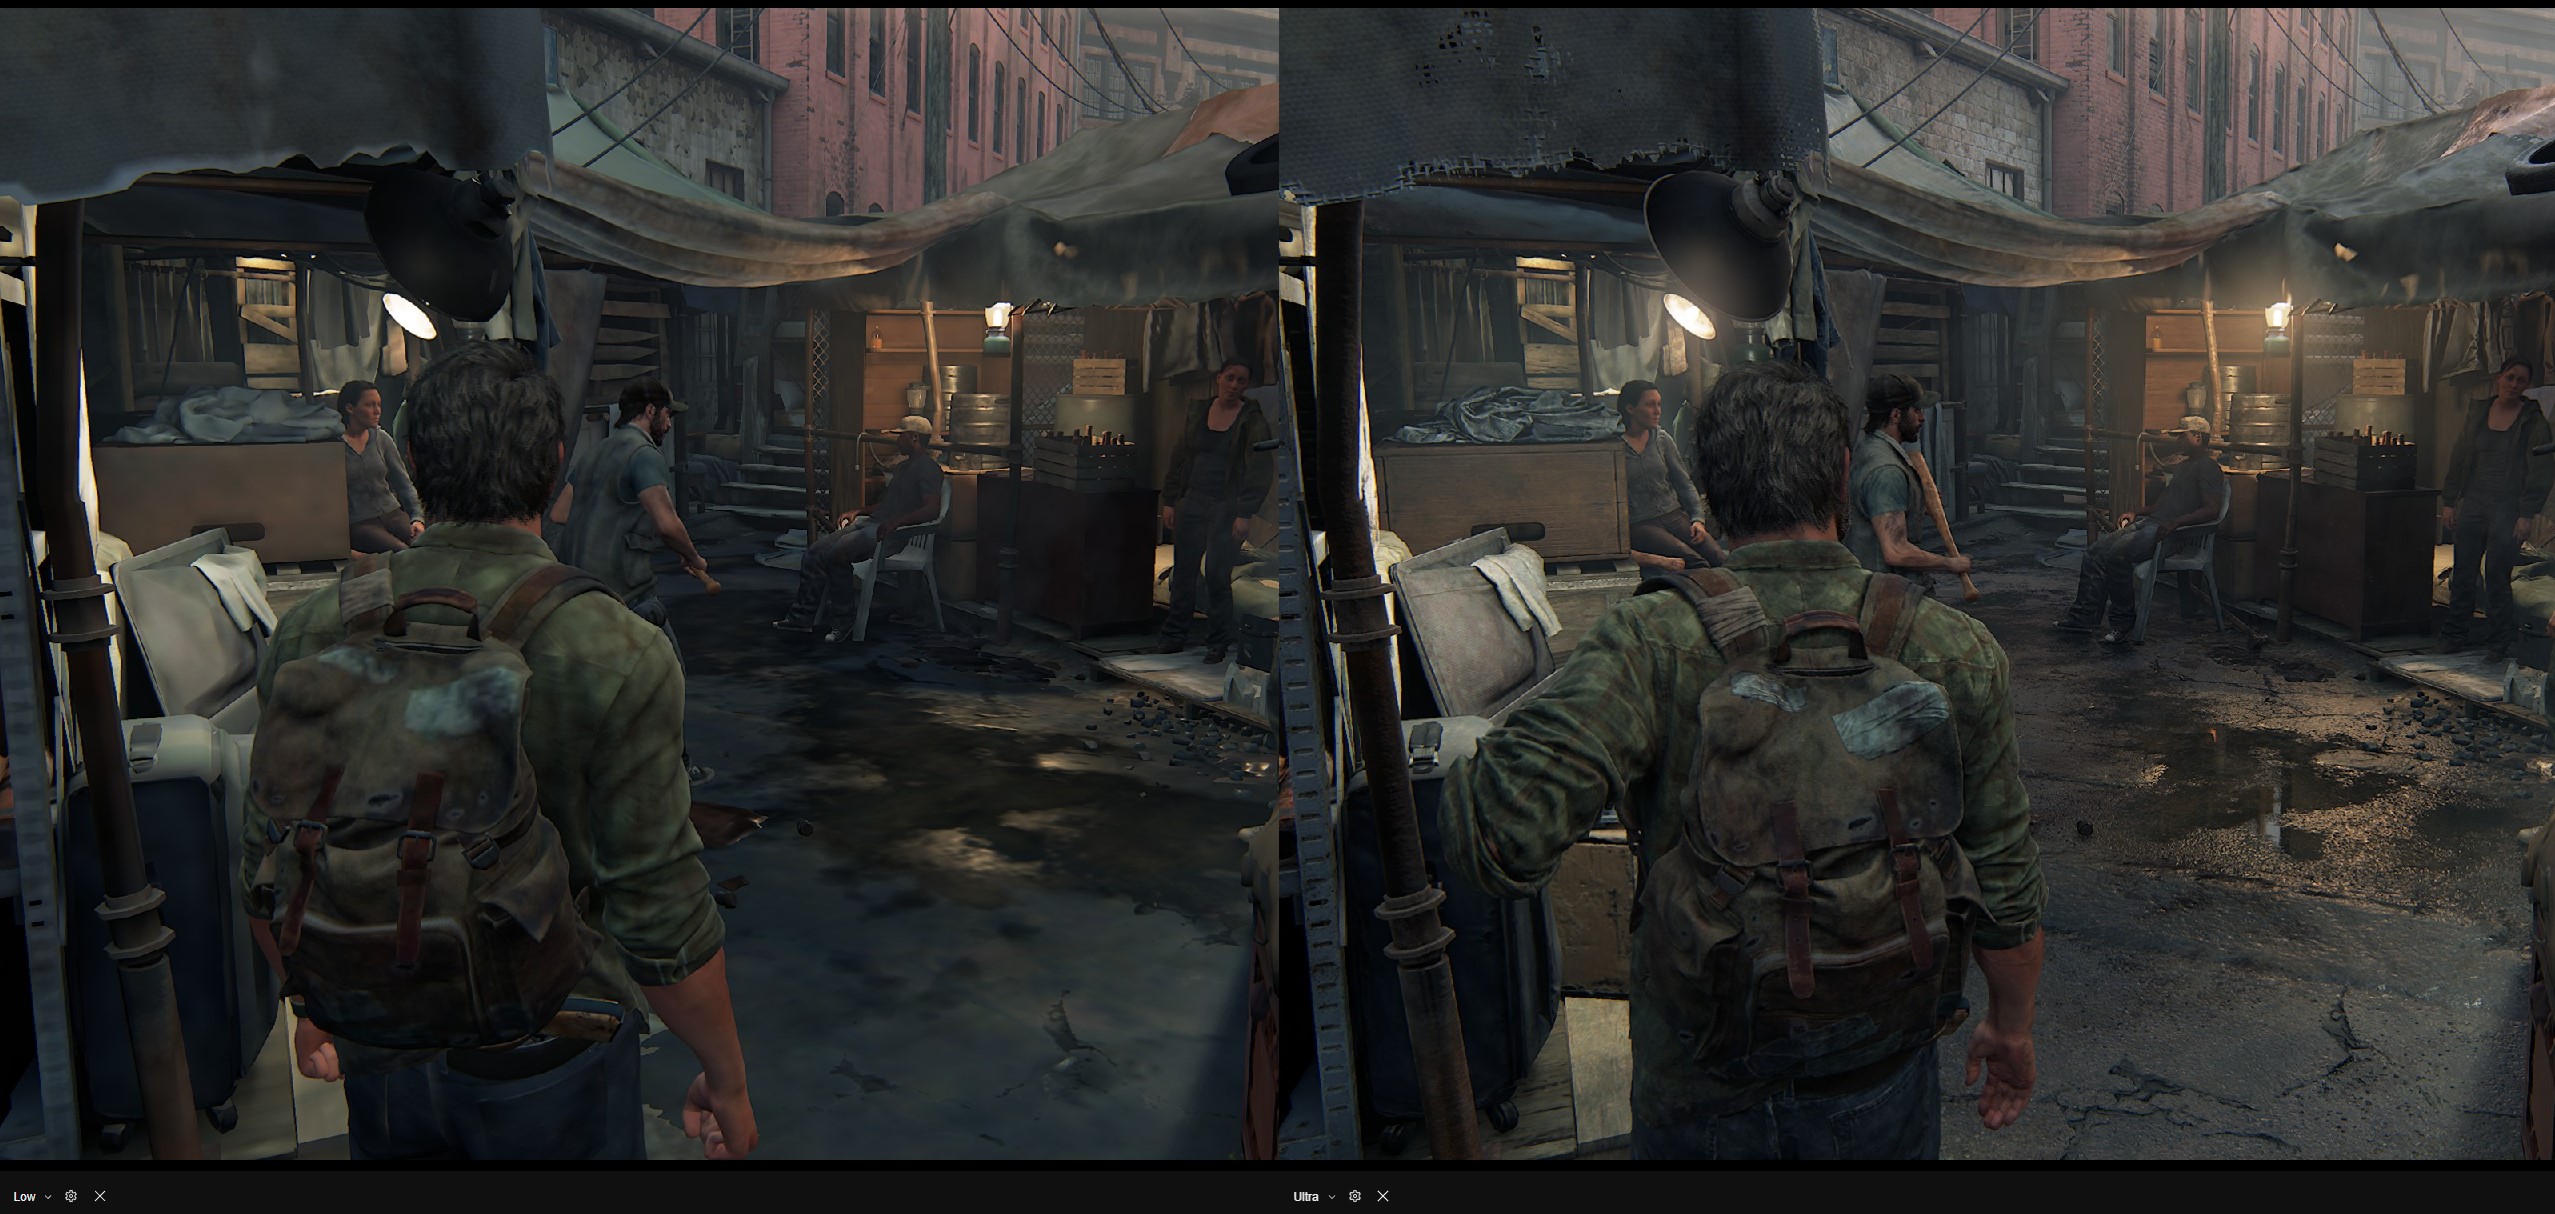 Uma comparação entre as predefinições gráficas Low e Ultra em The Last of Us no PC.